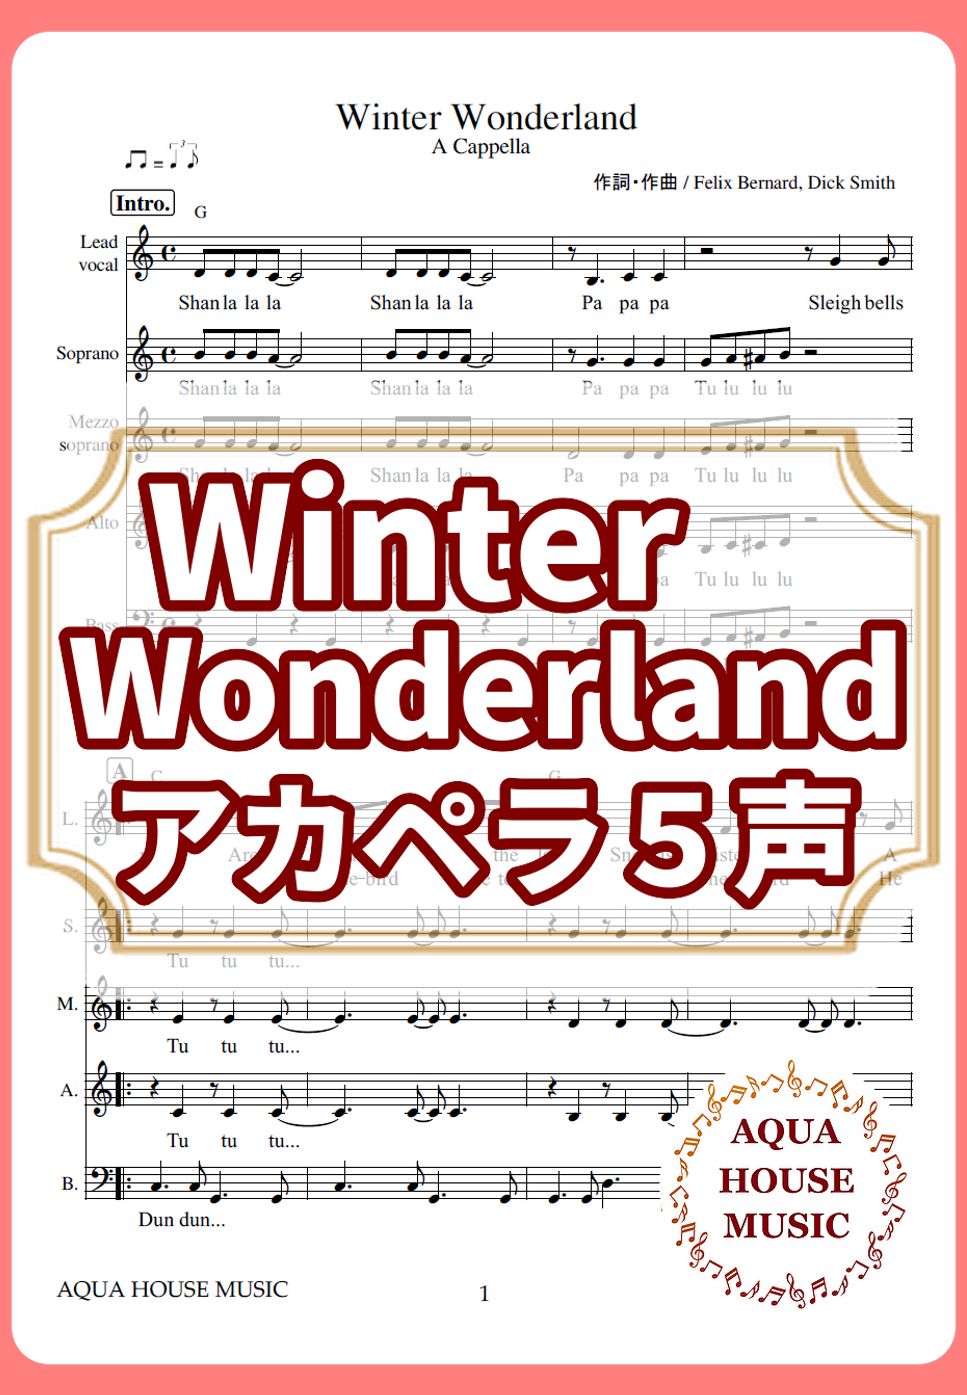 Winter Wonderland (アカペラ楽譜♪5声ボイパなし) by 飯田 亜紗子